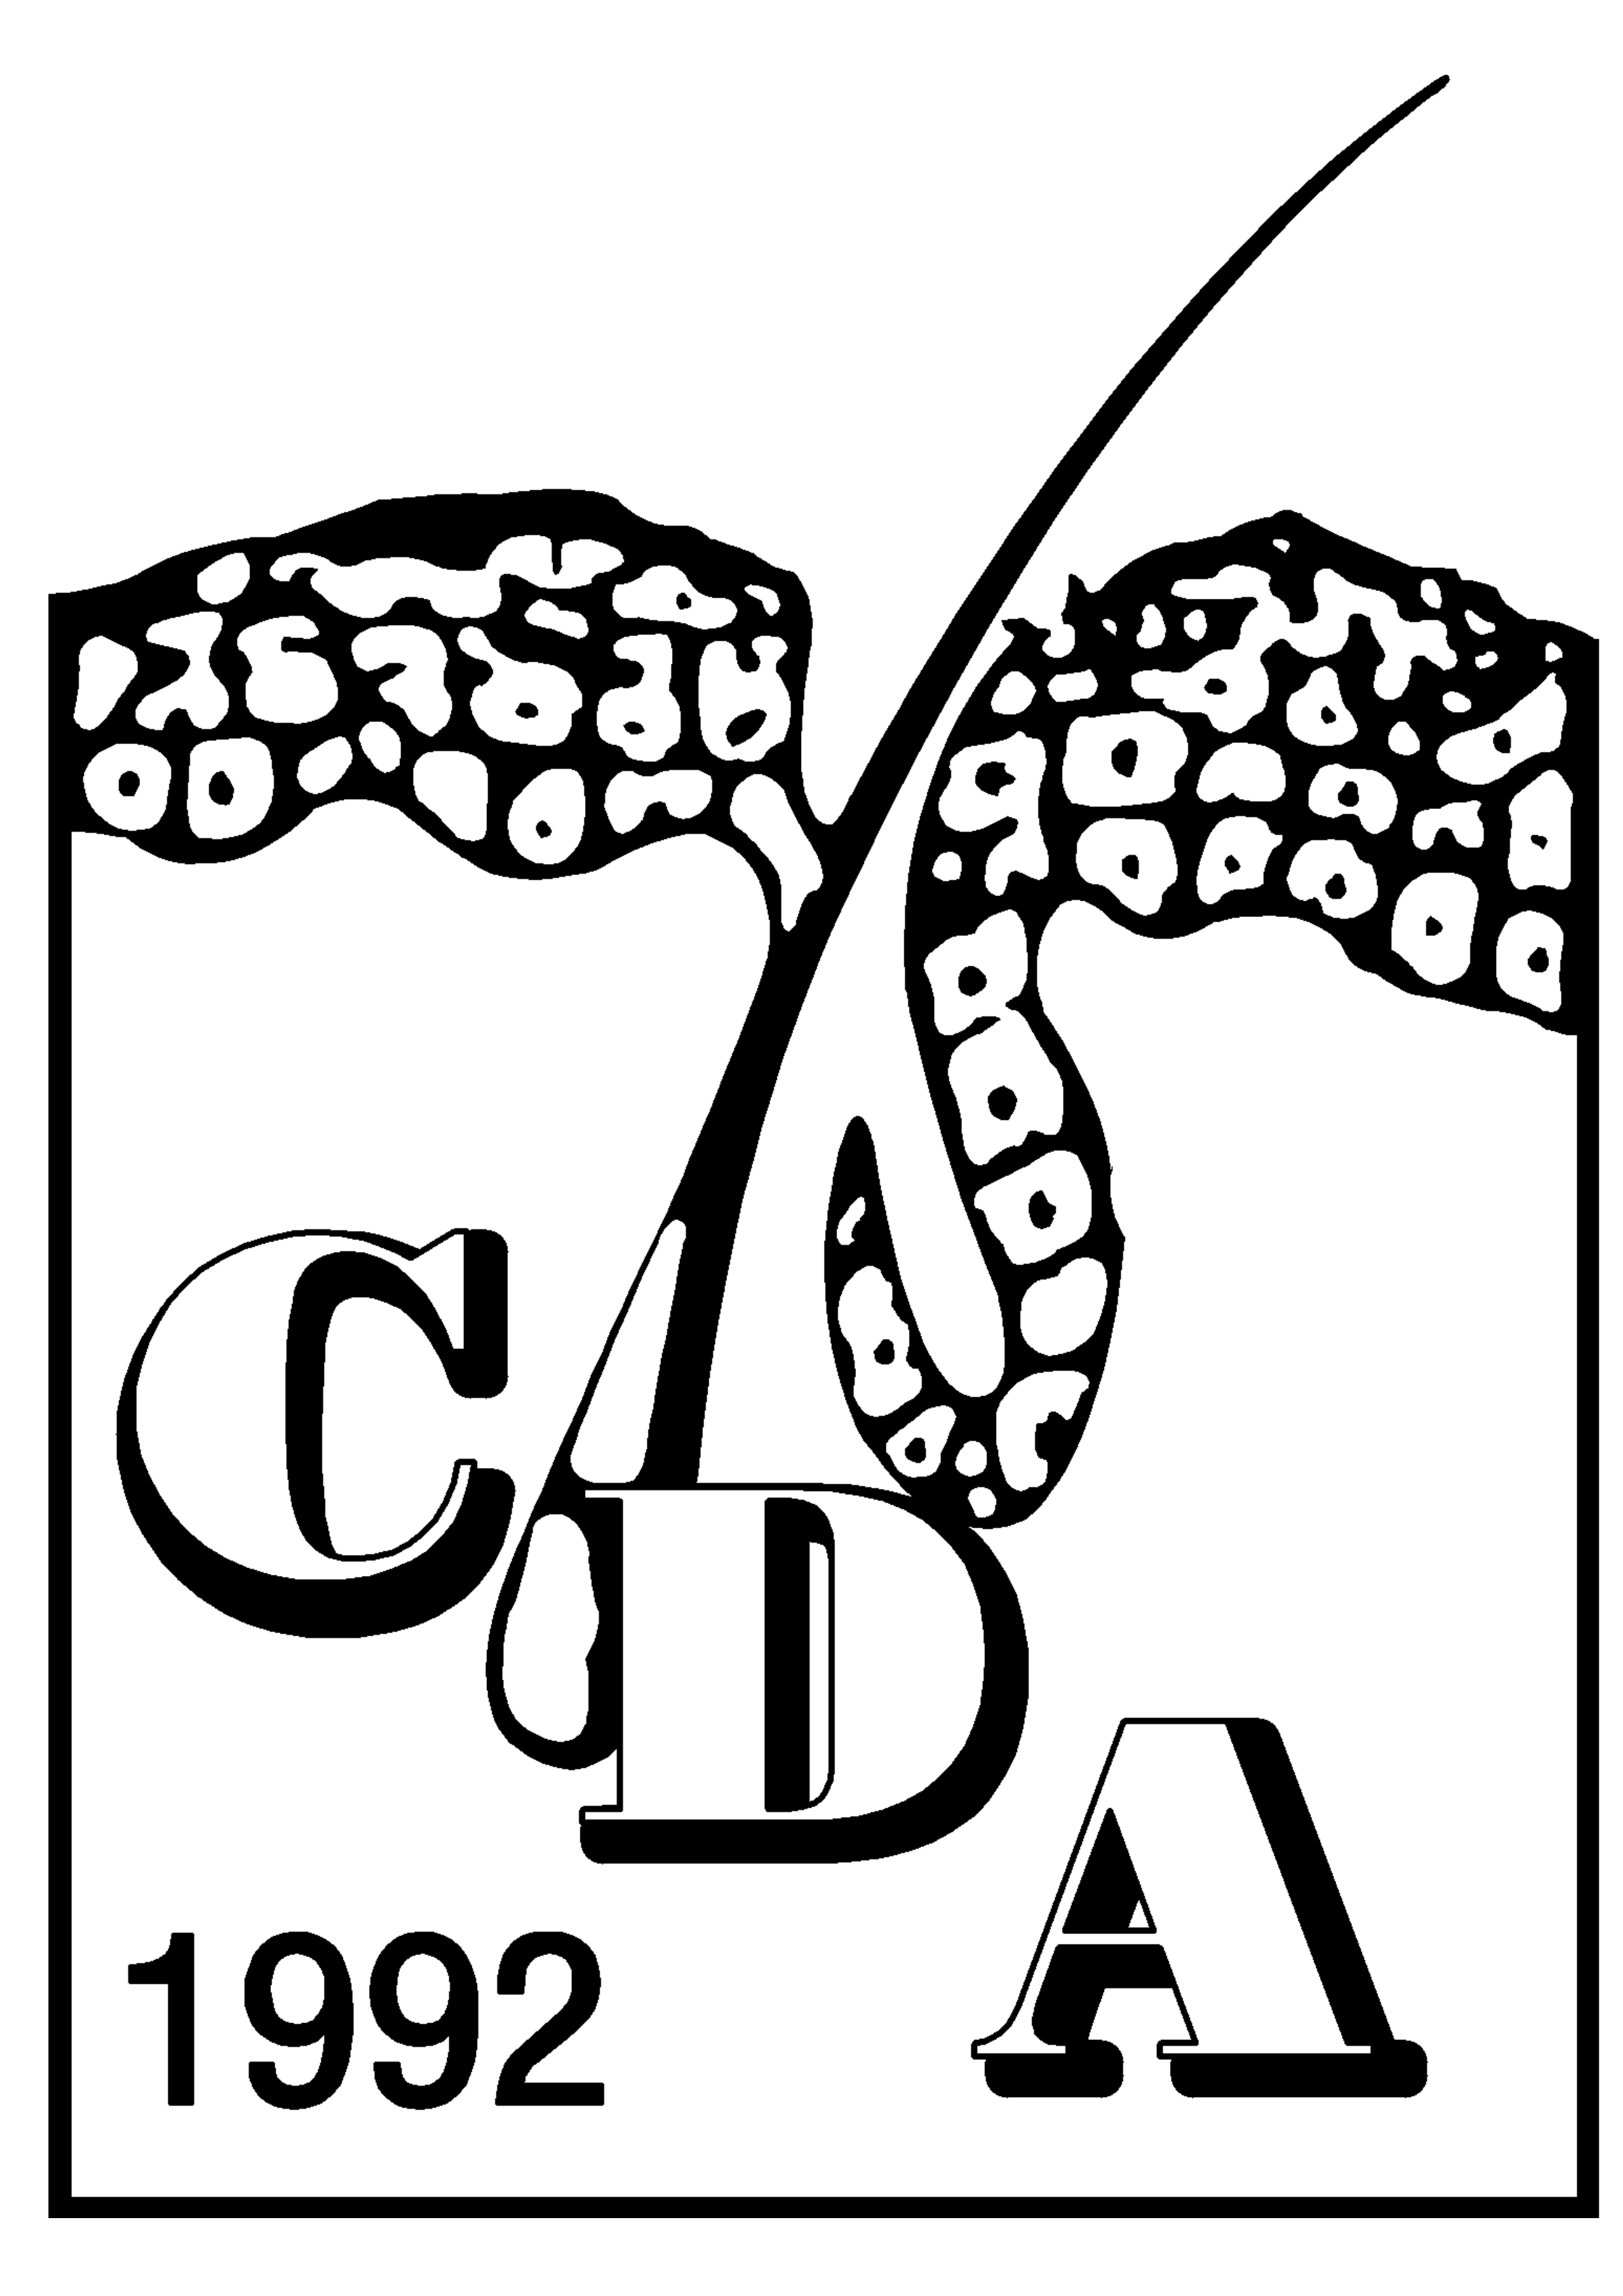 Caribbean Dermatology Association